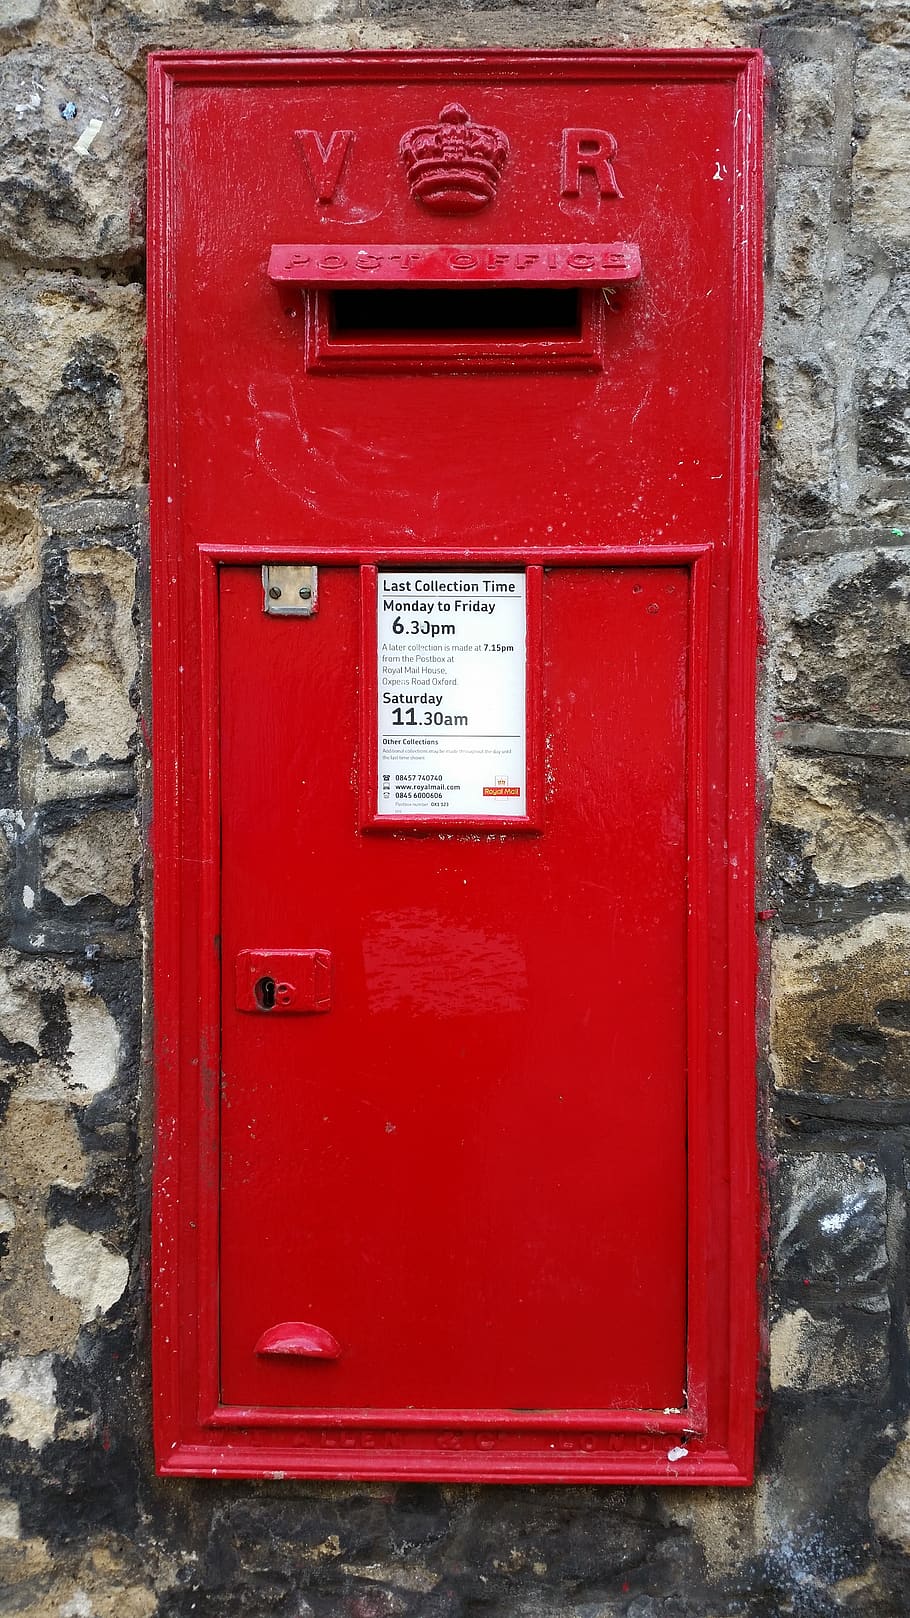 britânico, caixa postal, cargo, caixa de correio, inglaterra, grã bretanha, reino unido, caixa, vermelho, comunicação